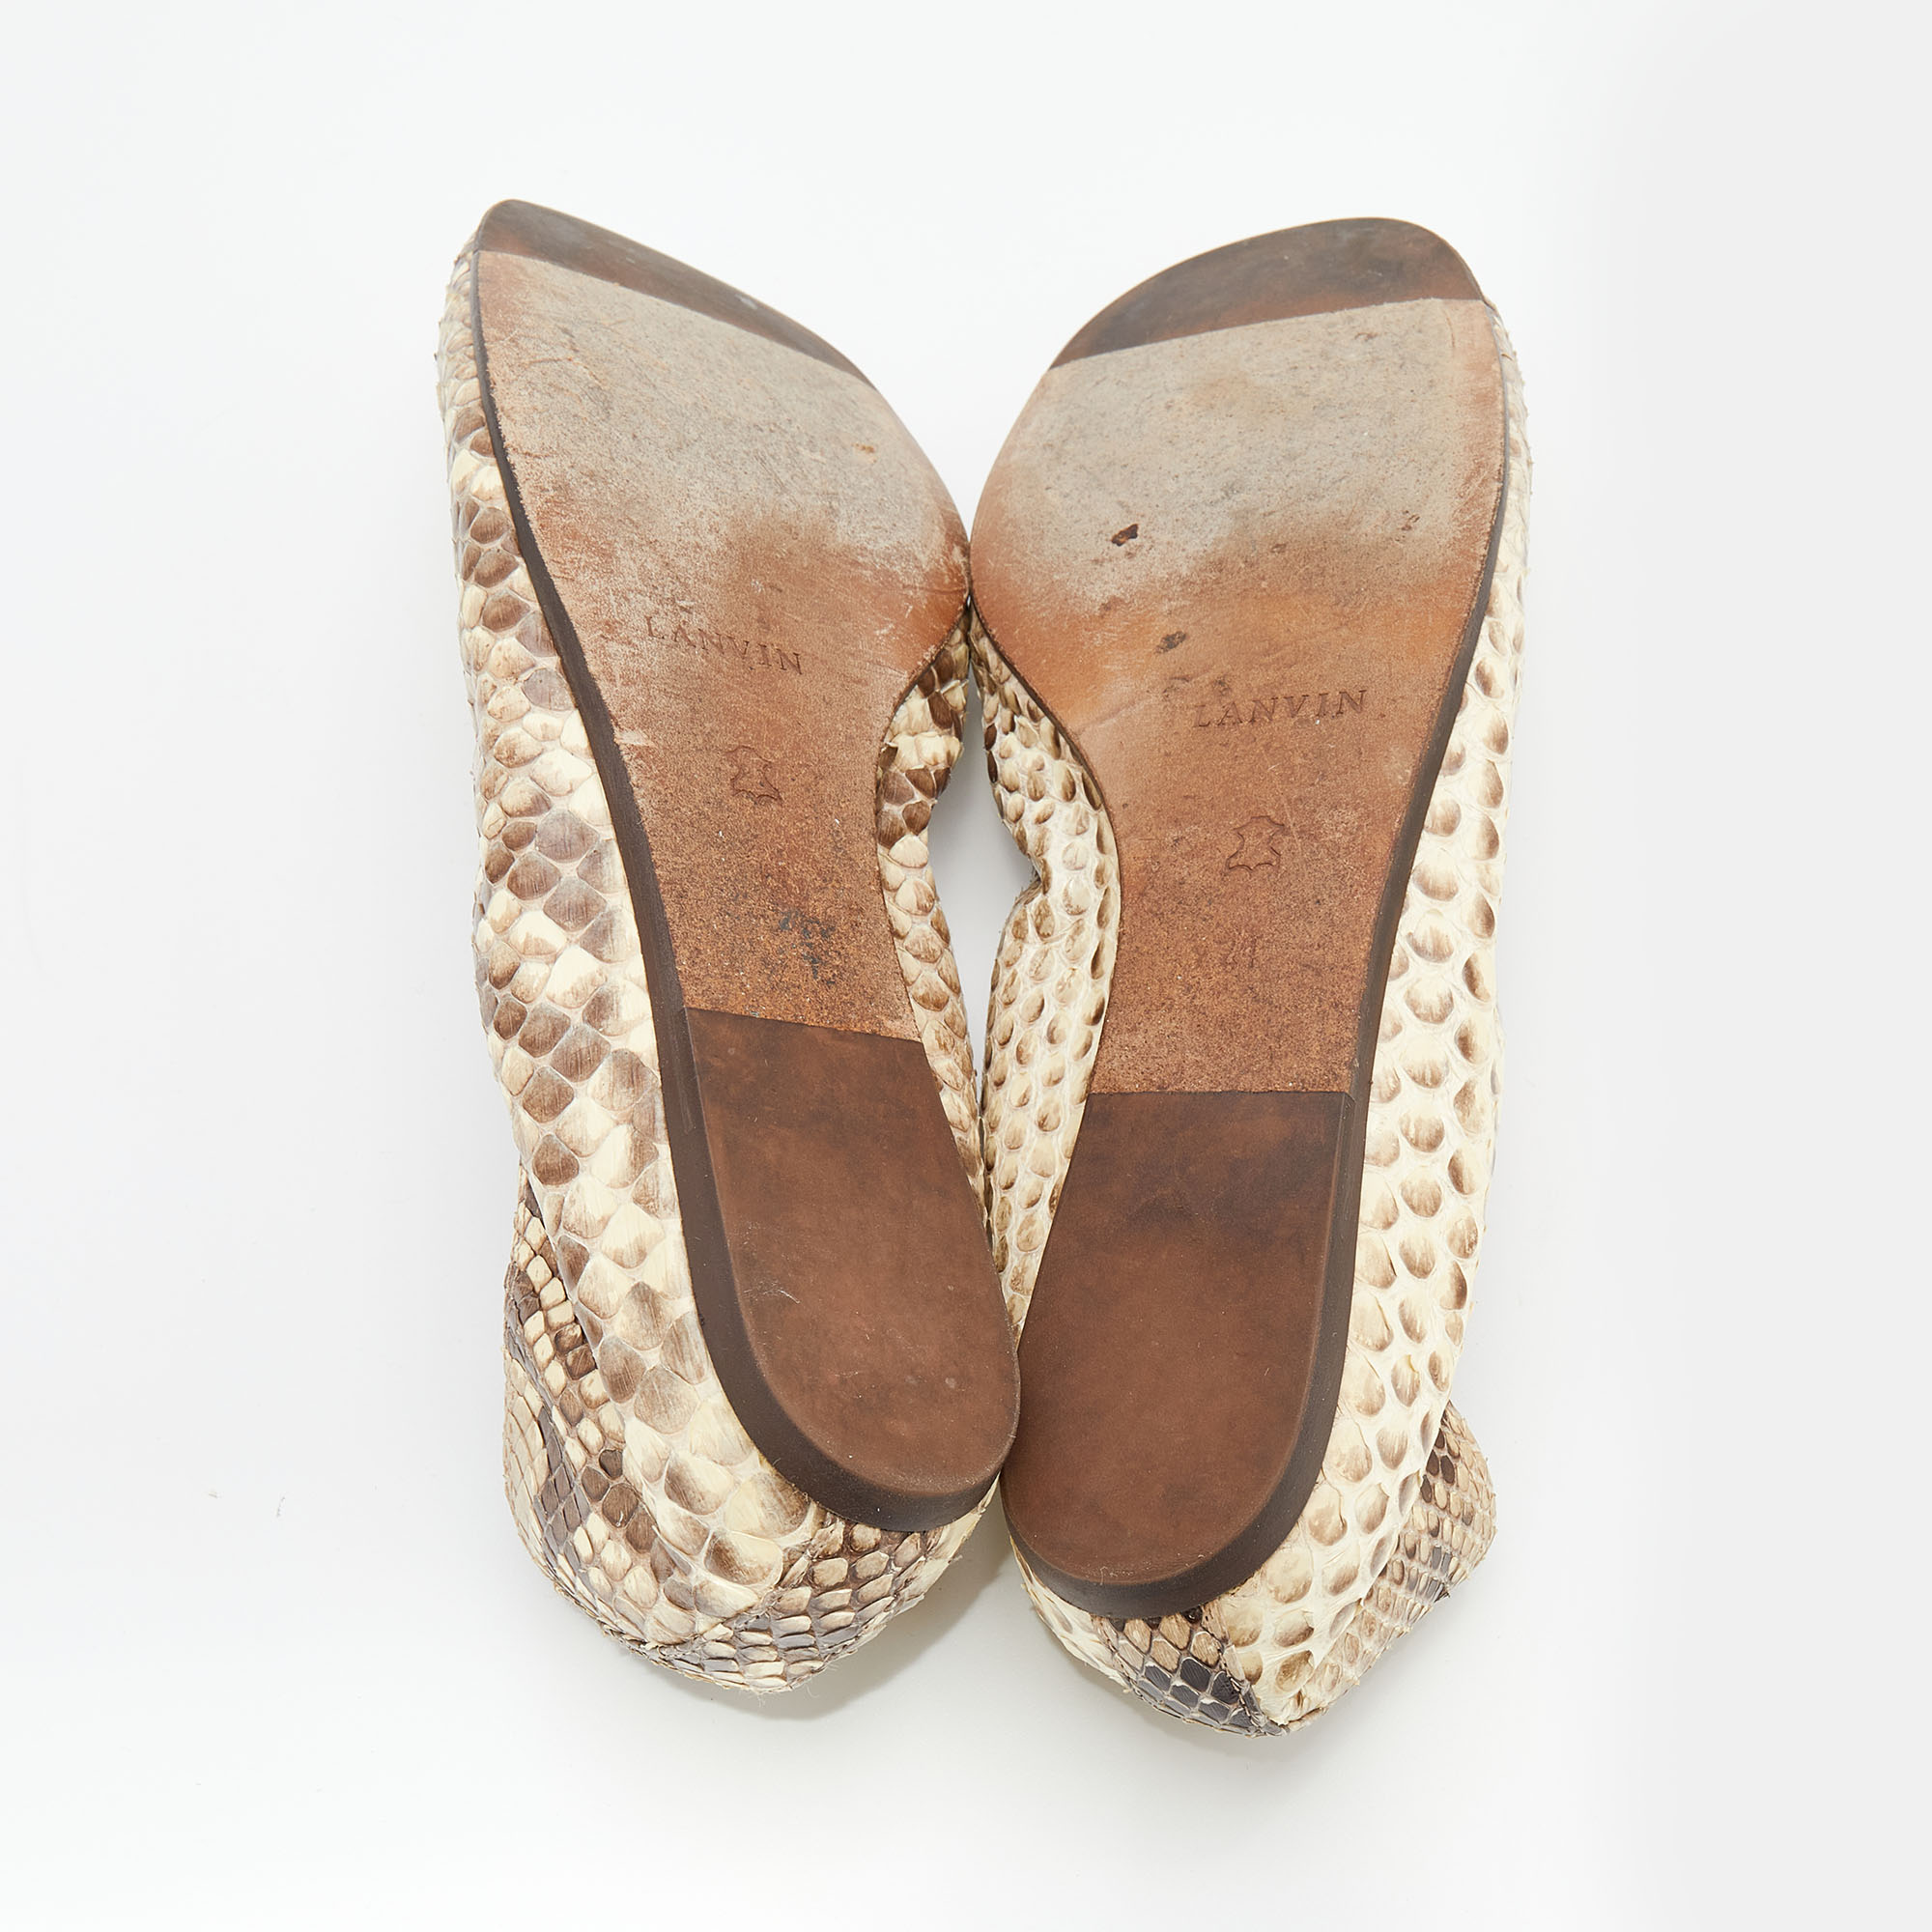 Lanvin Beige/Brown Python Leather Scrunch Ballet Flats Size 41